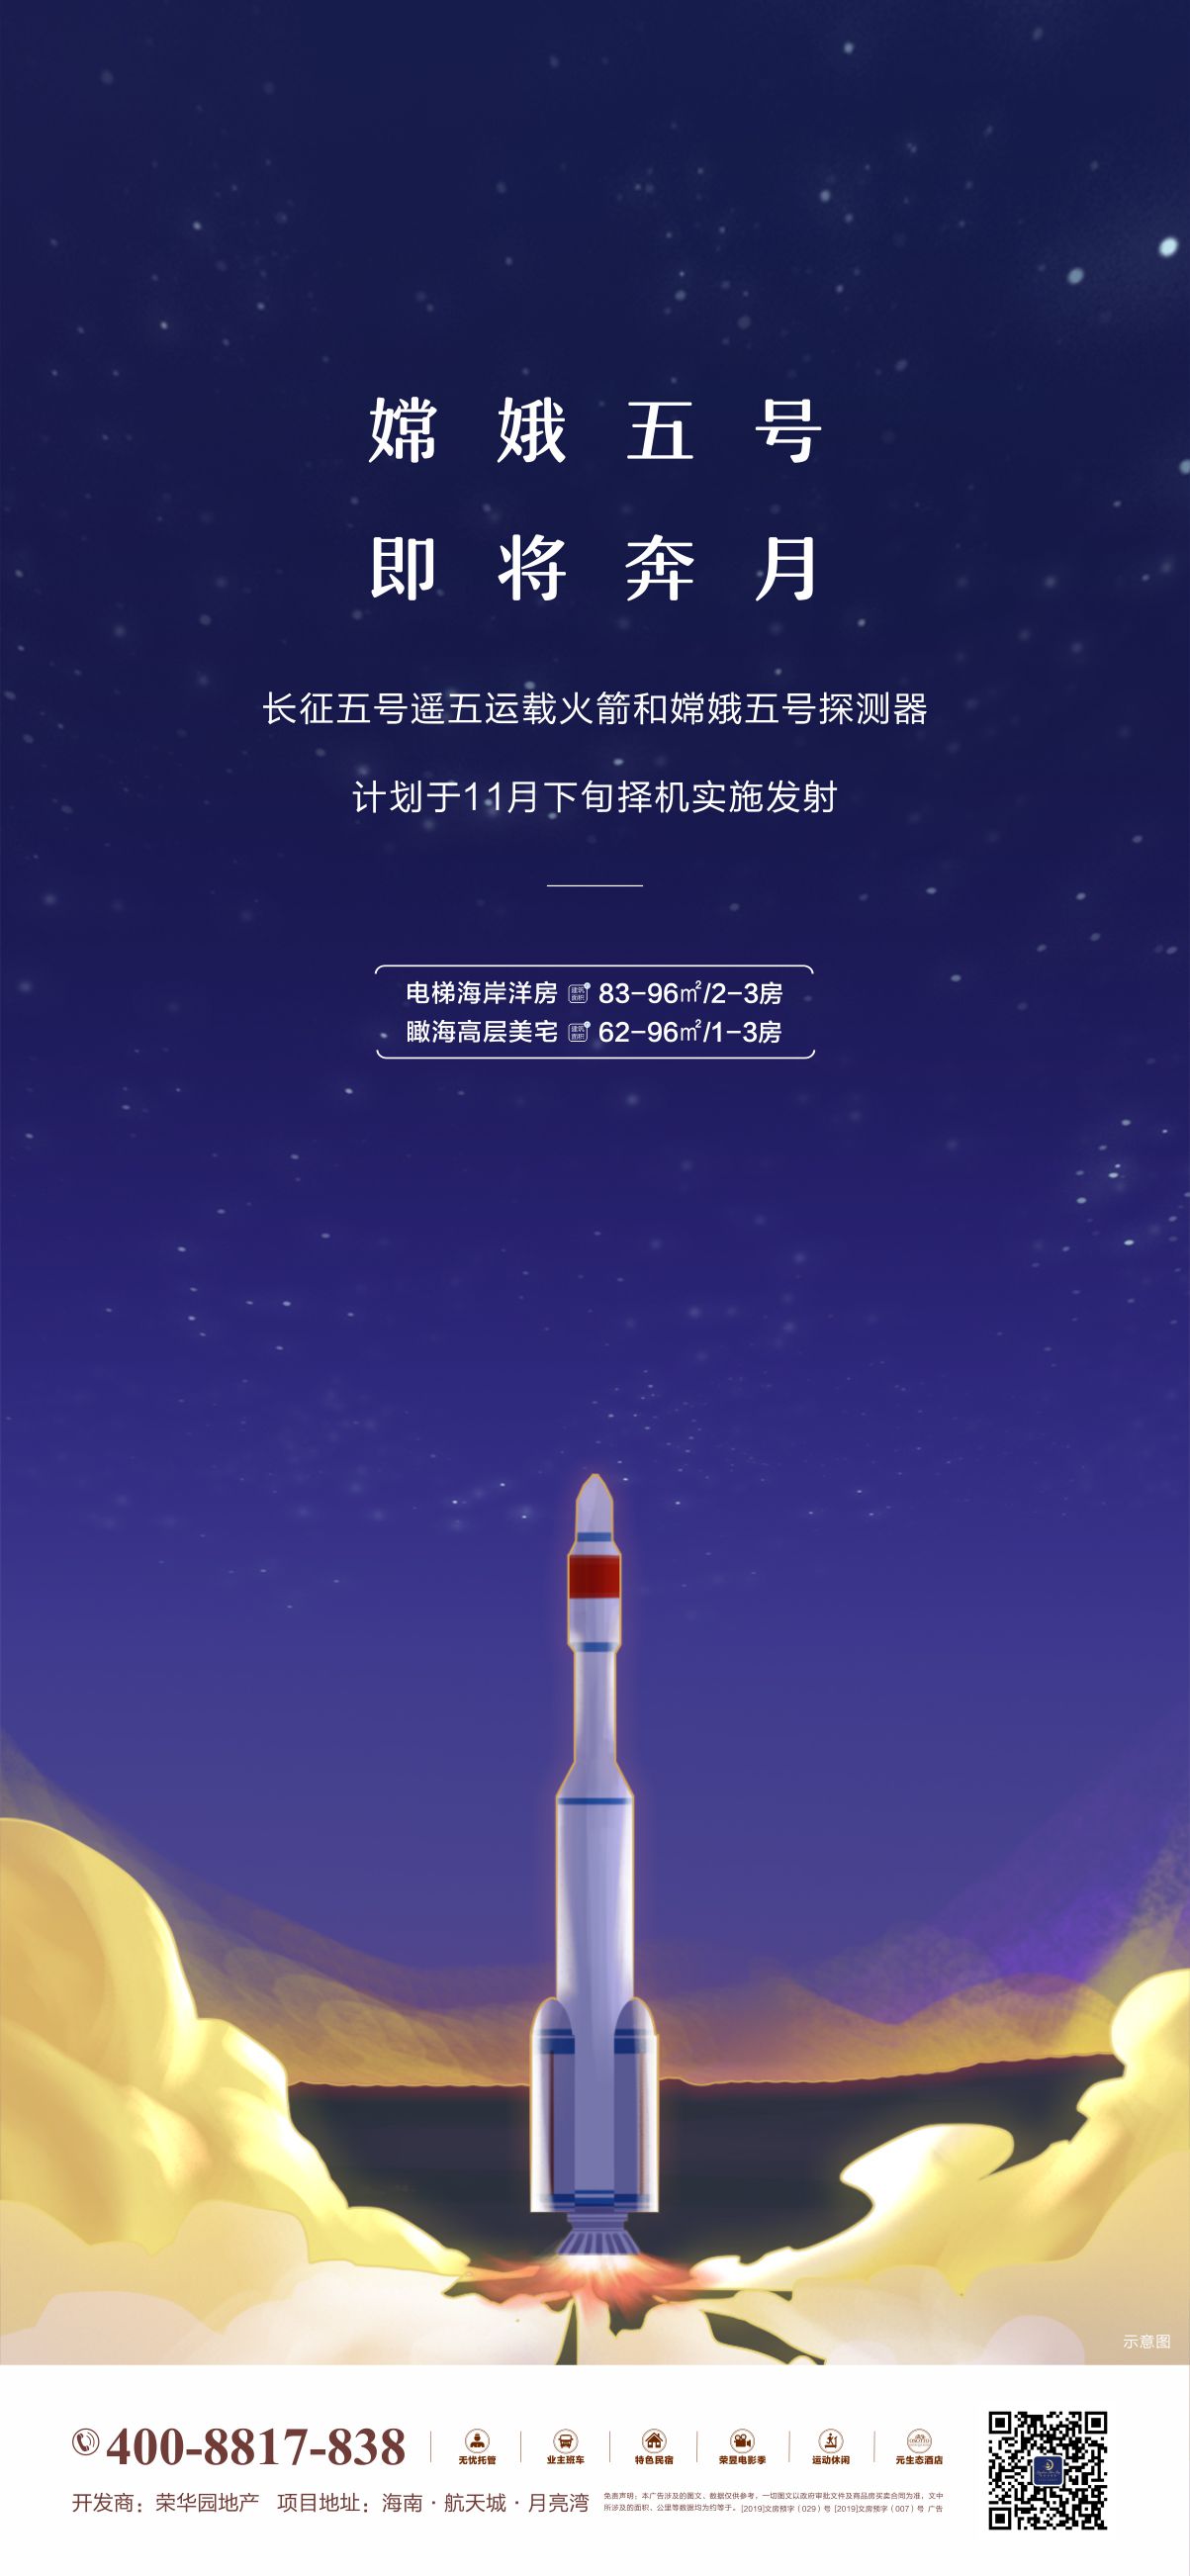 火箭发射psd cdr广告设计素材海报模板免费下载